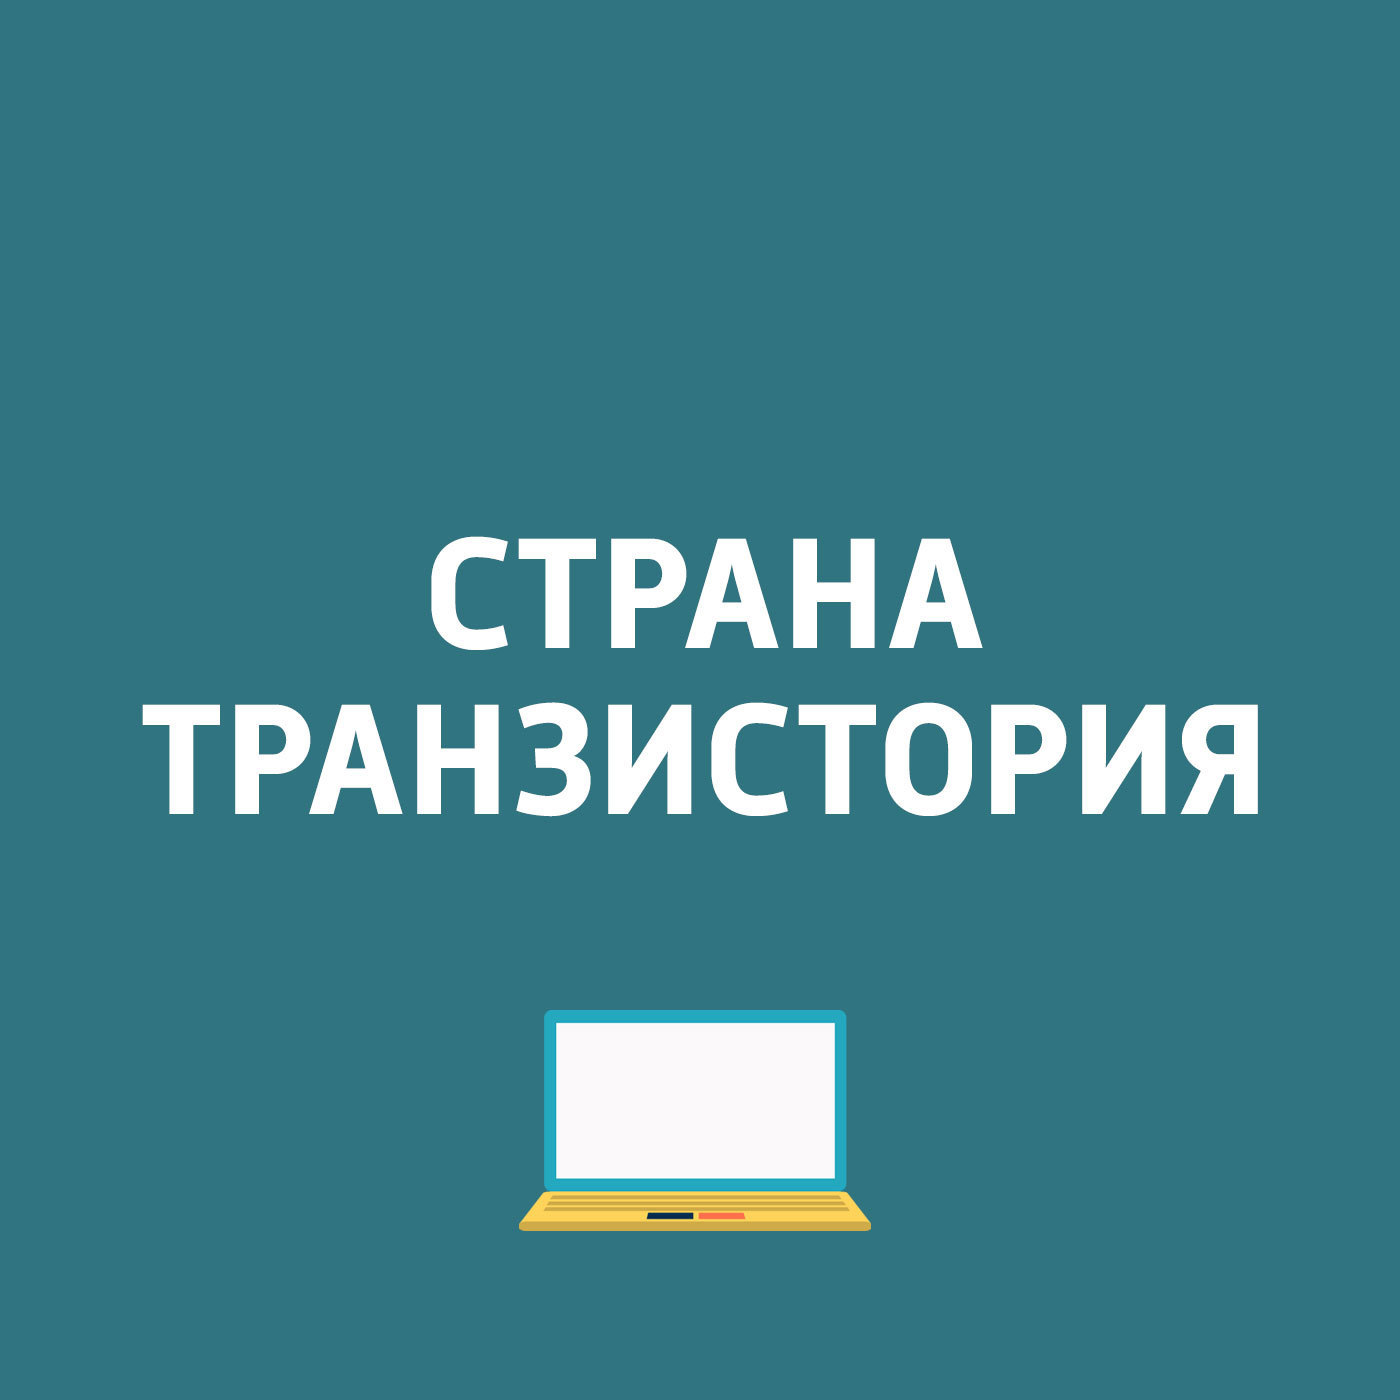 Начало продаж Xperia XZ2 Premium в России; Графическая архитектура NVIDIA Turing; Google на Android отслеживает и сохраняет действия пользователей